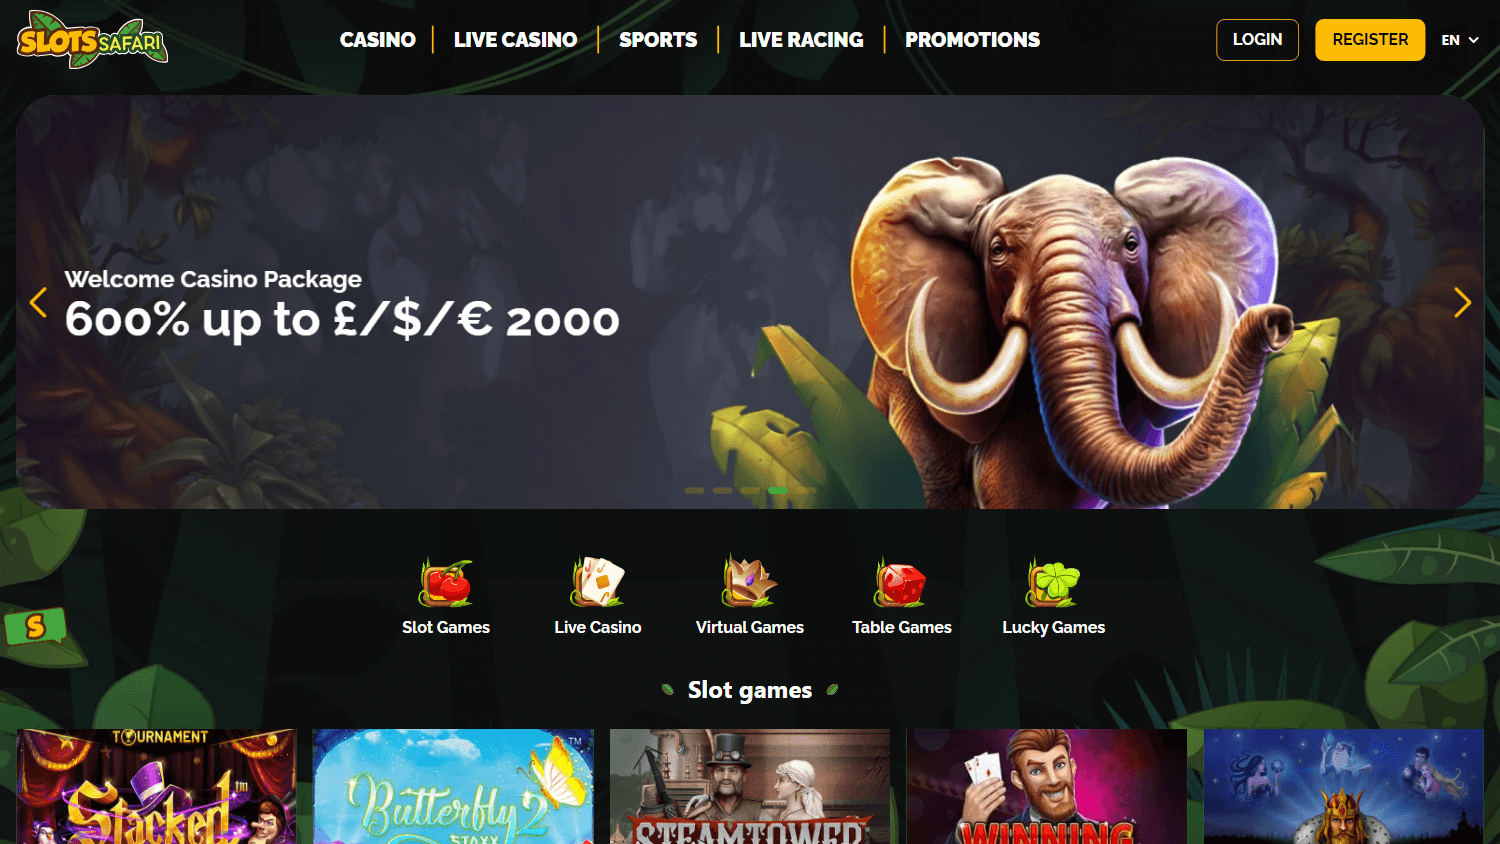 slots_safari_casino_homepage_desktop